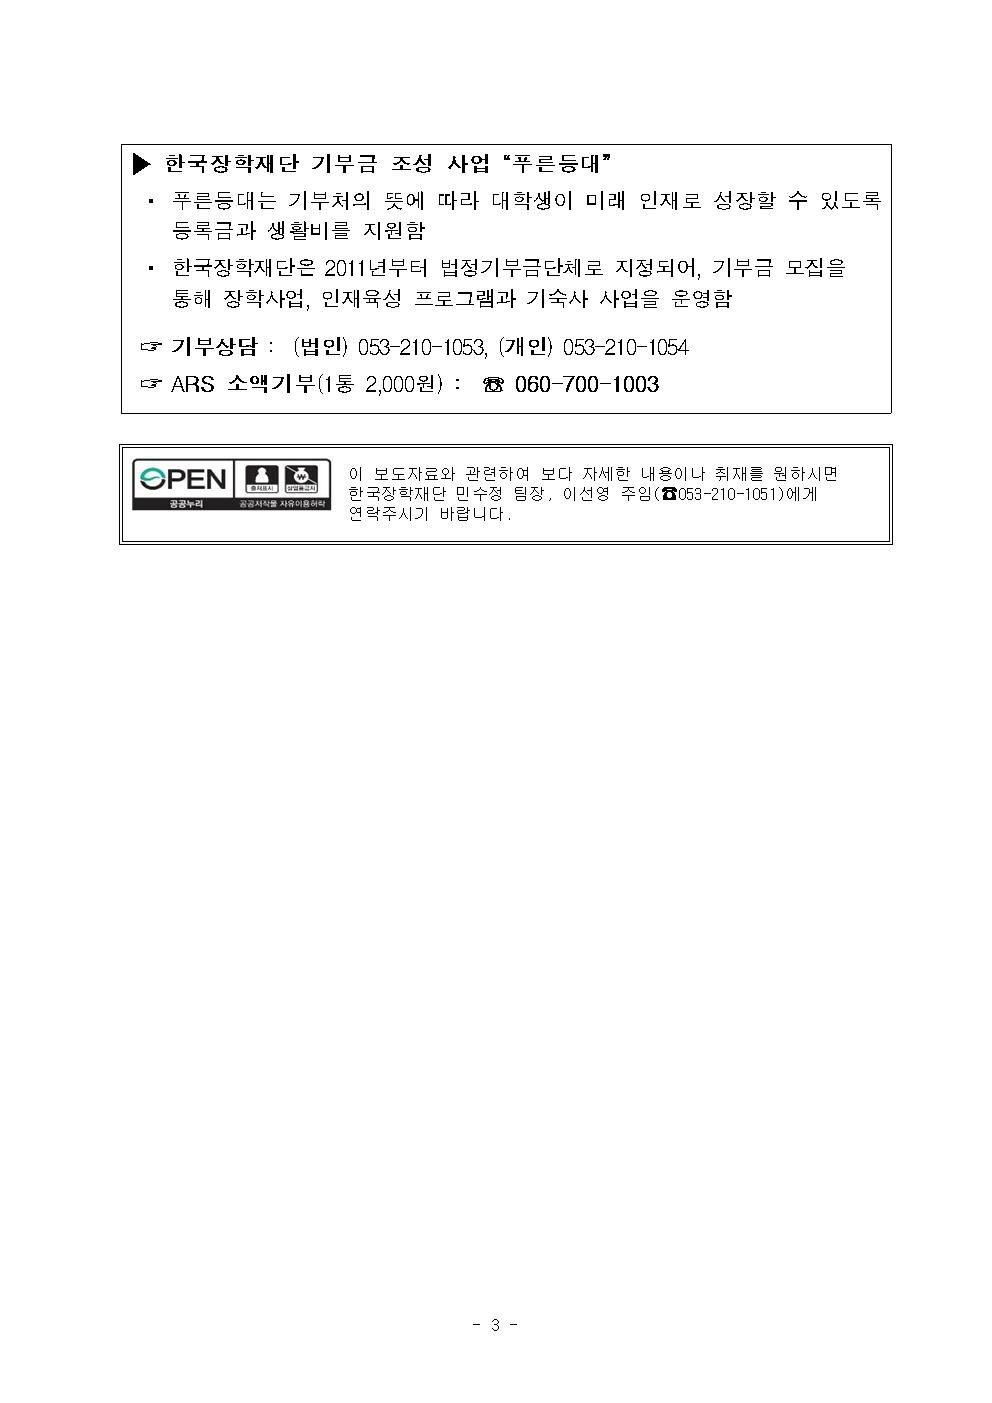 01-30(목)보도자료 한국장학재단 2020년 1학기 푸른등대 기부장학금 신청003.jpg